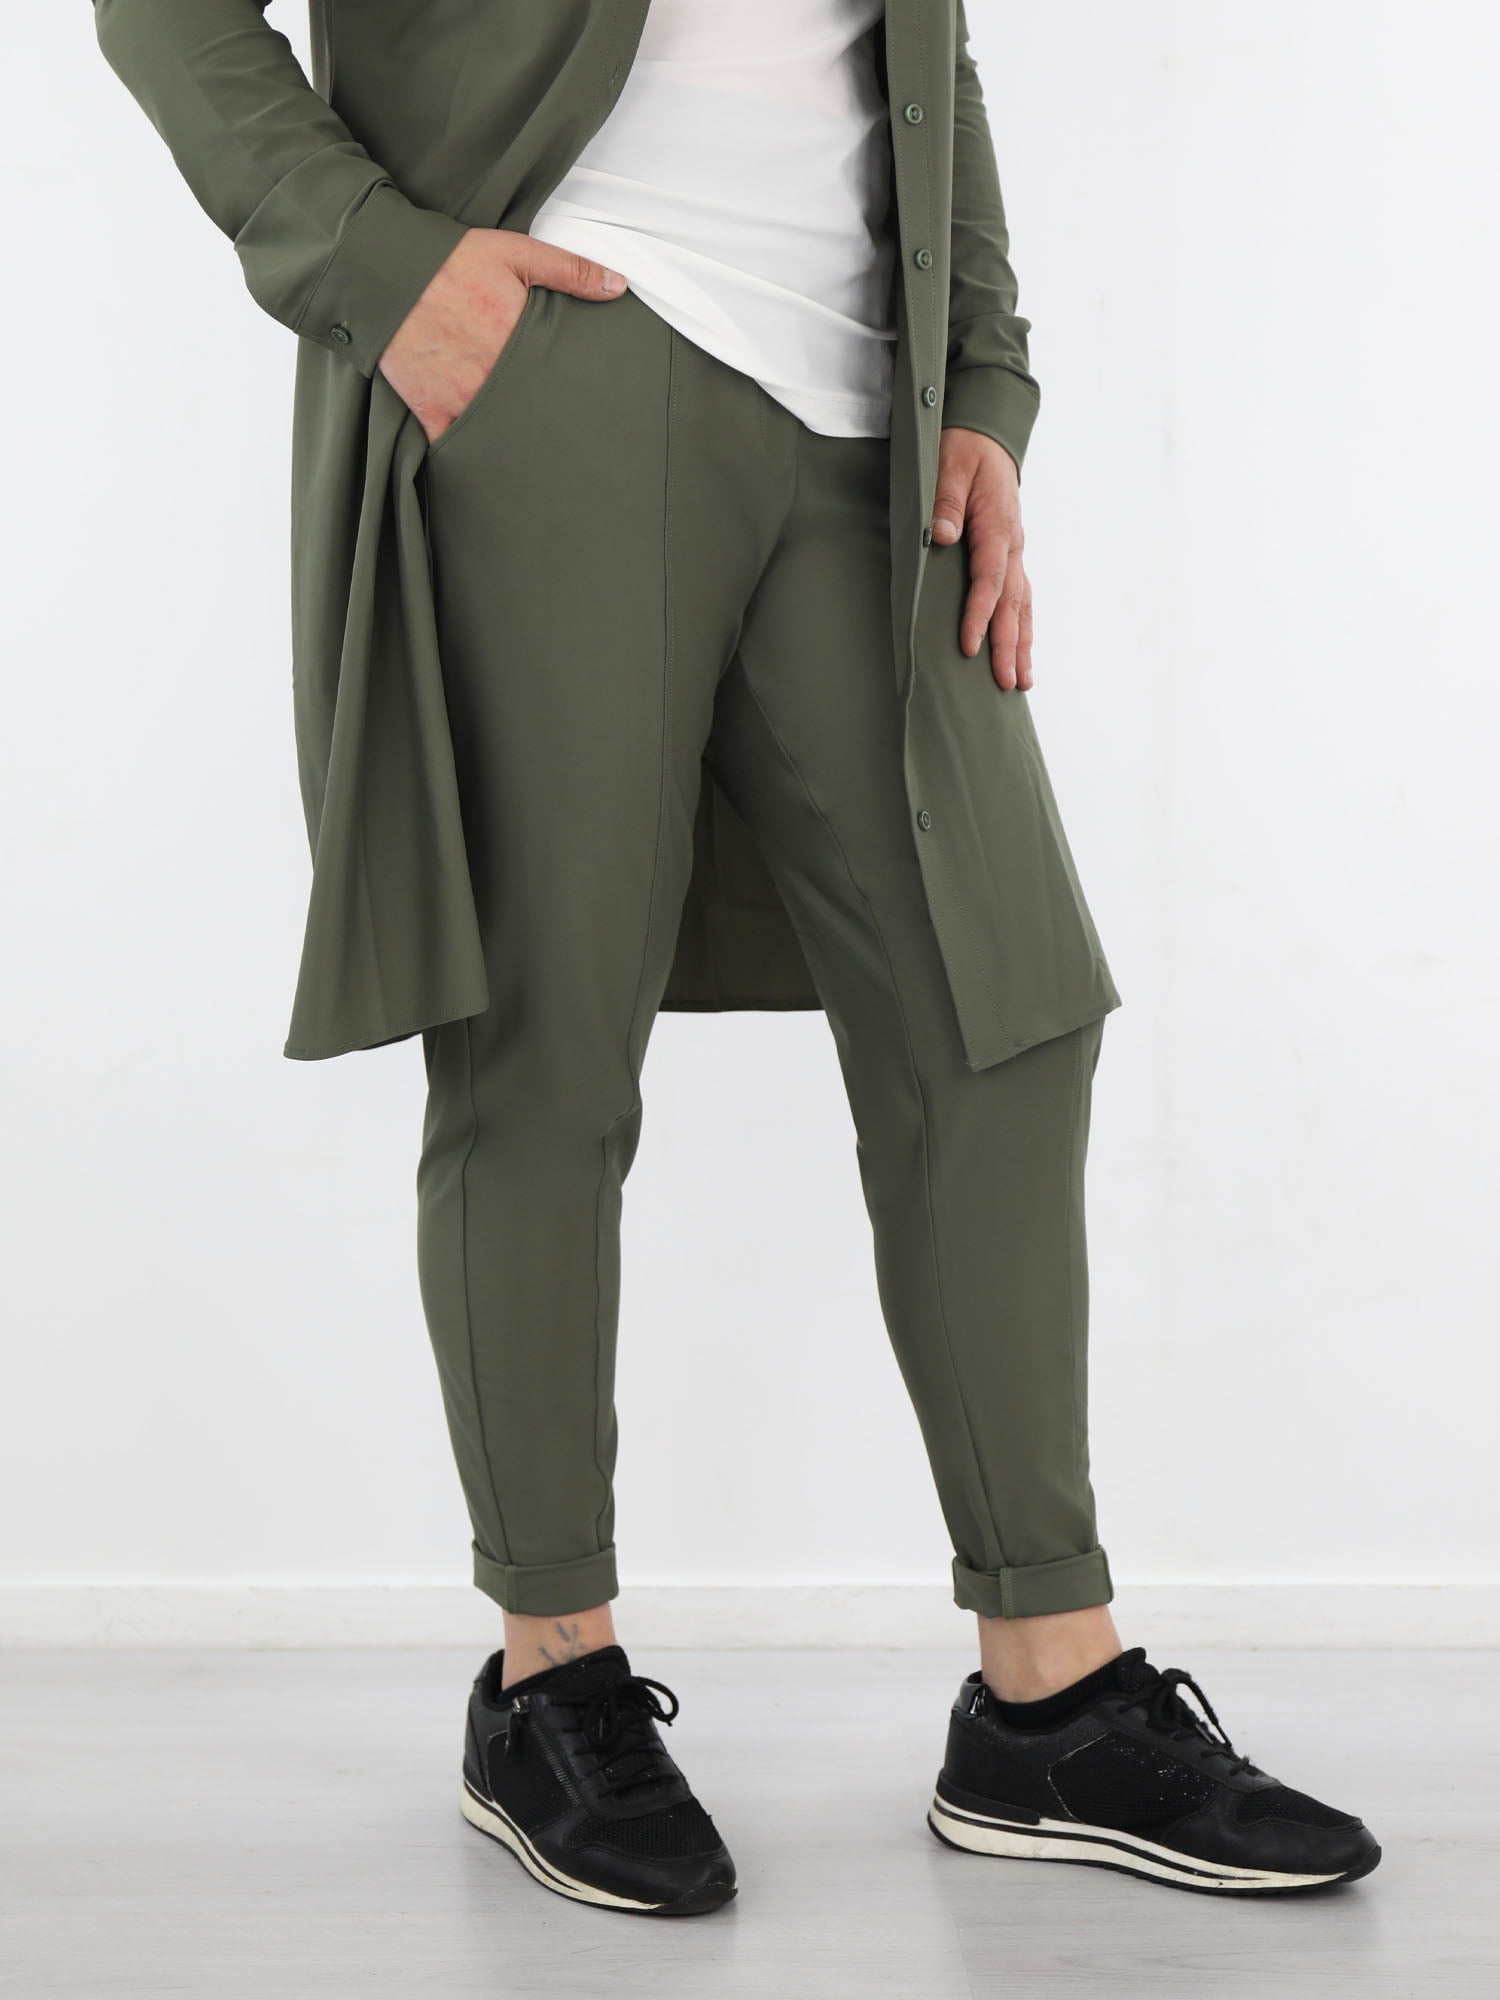 exclusive-broek-van-travelstof-in-een-army-groene-kleur